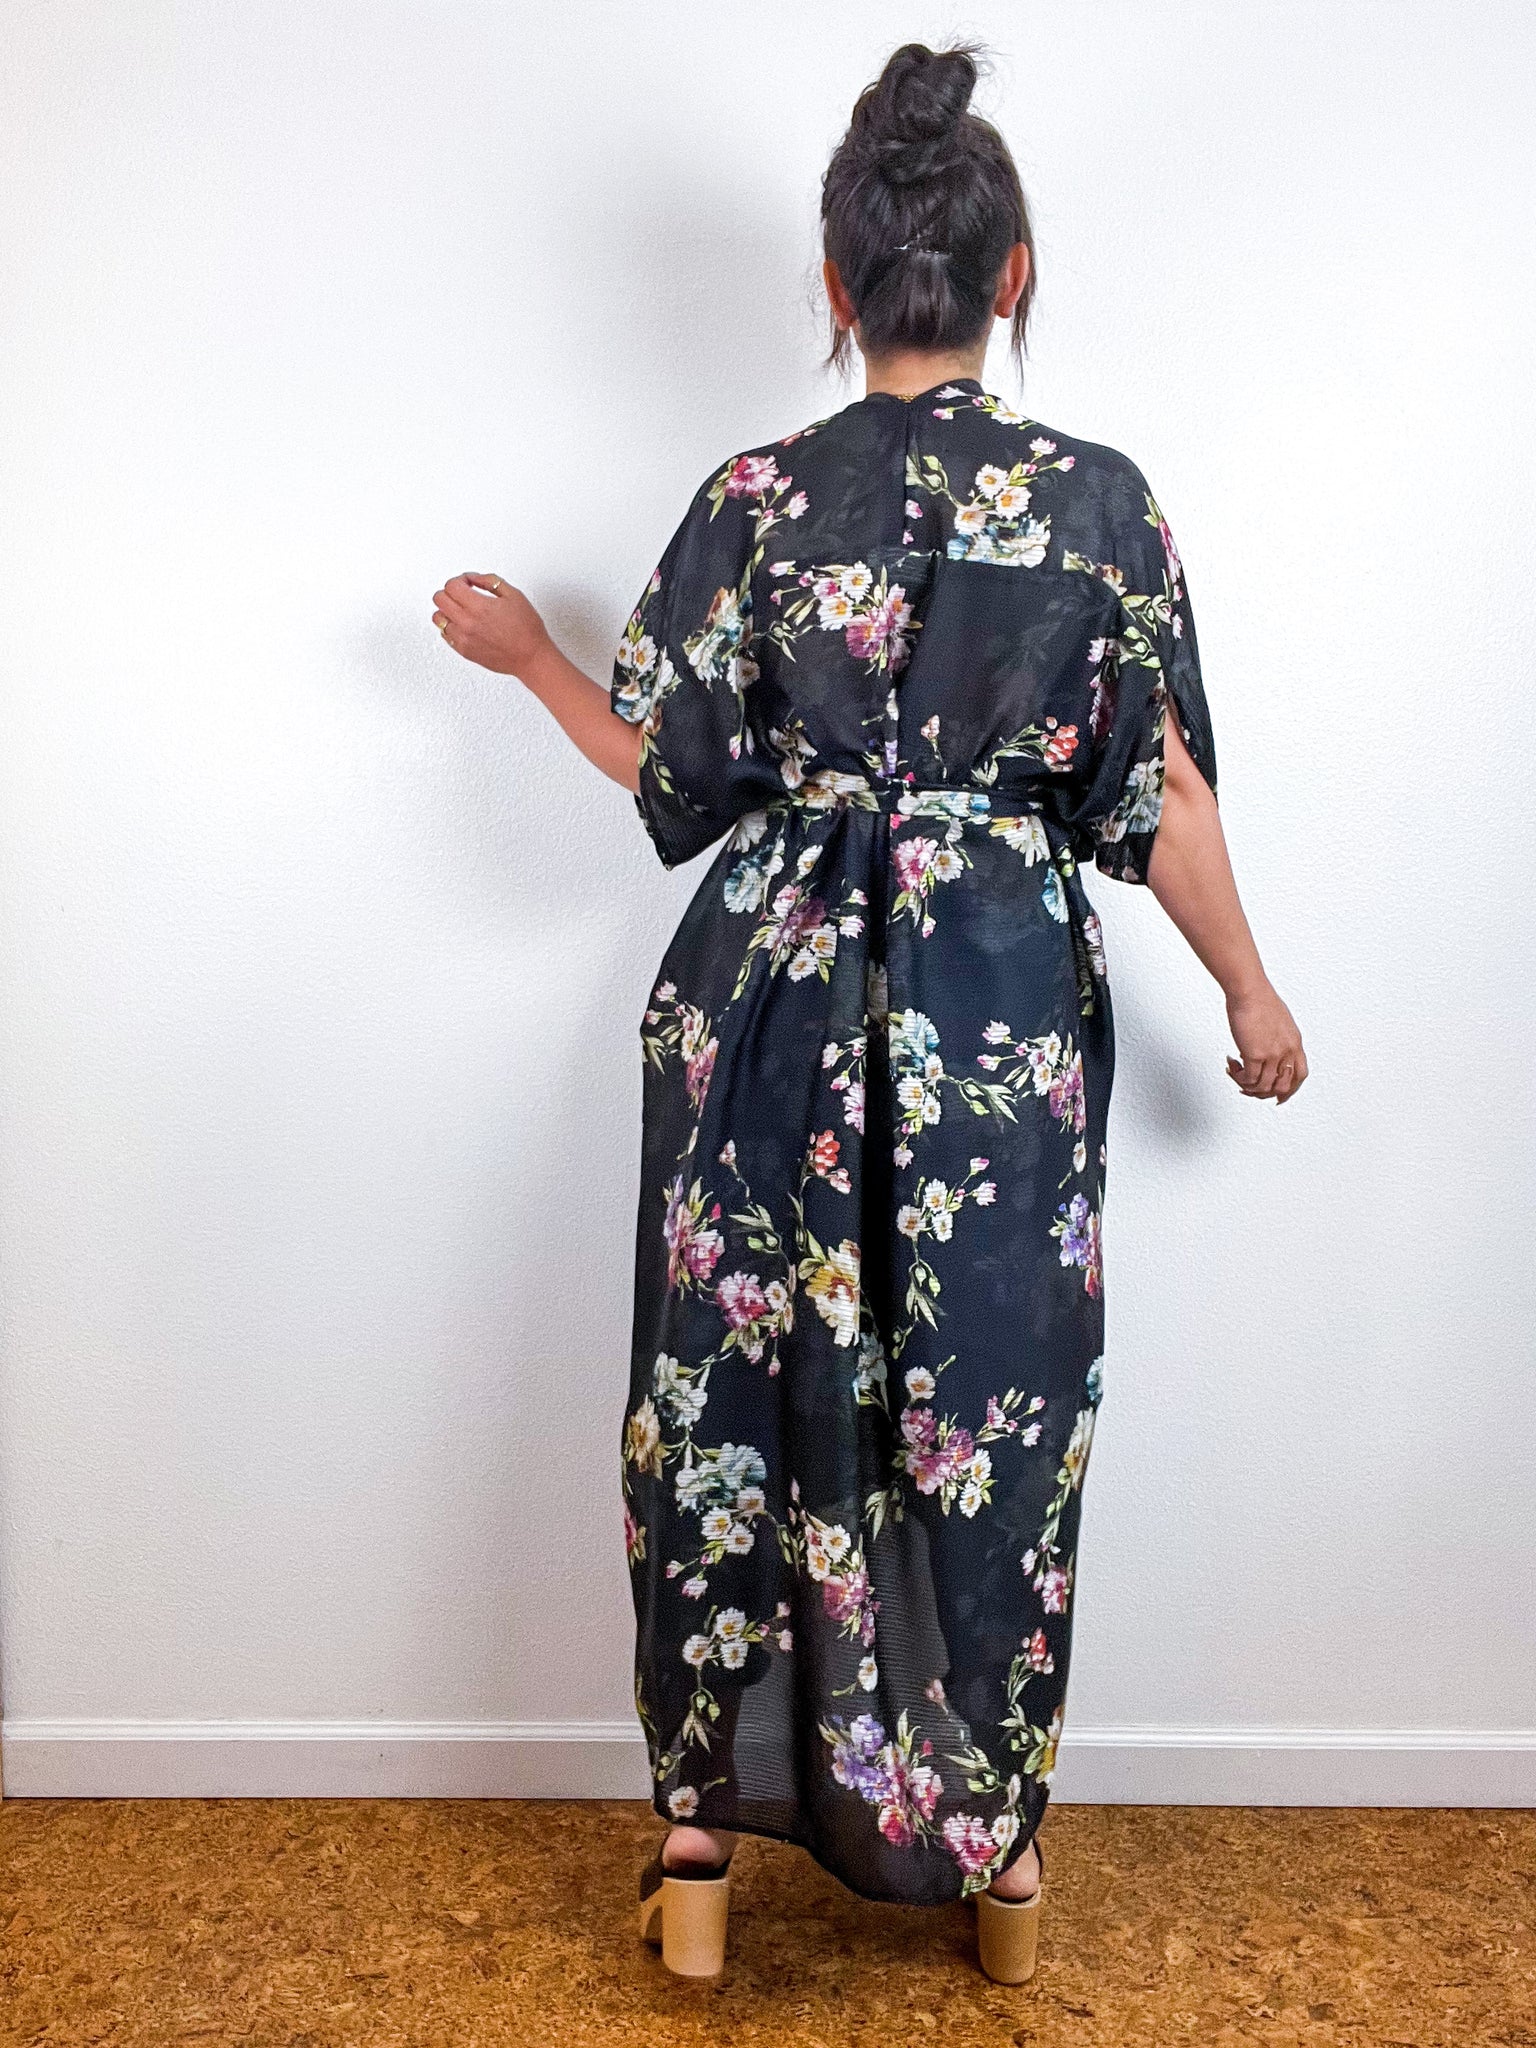 Print High Low Kimono Black Floral Stripe Chiffon